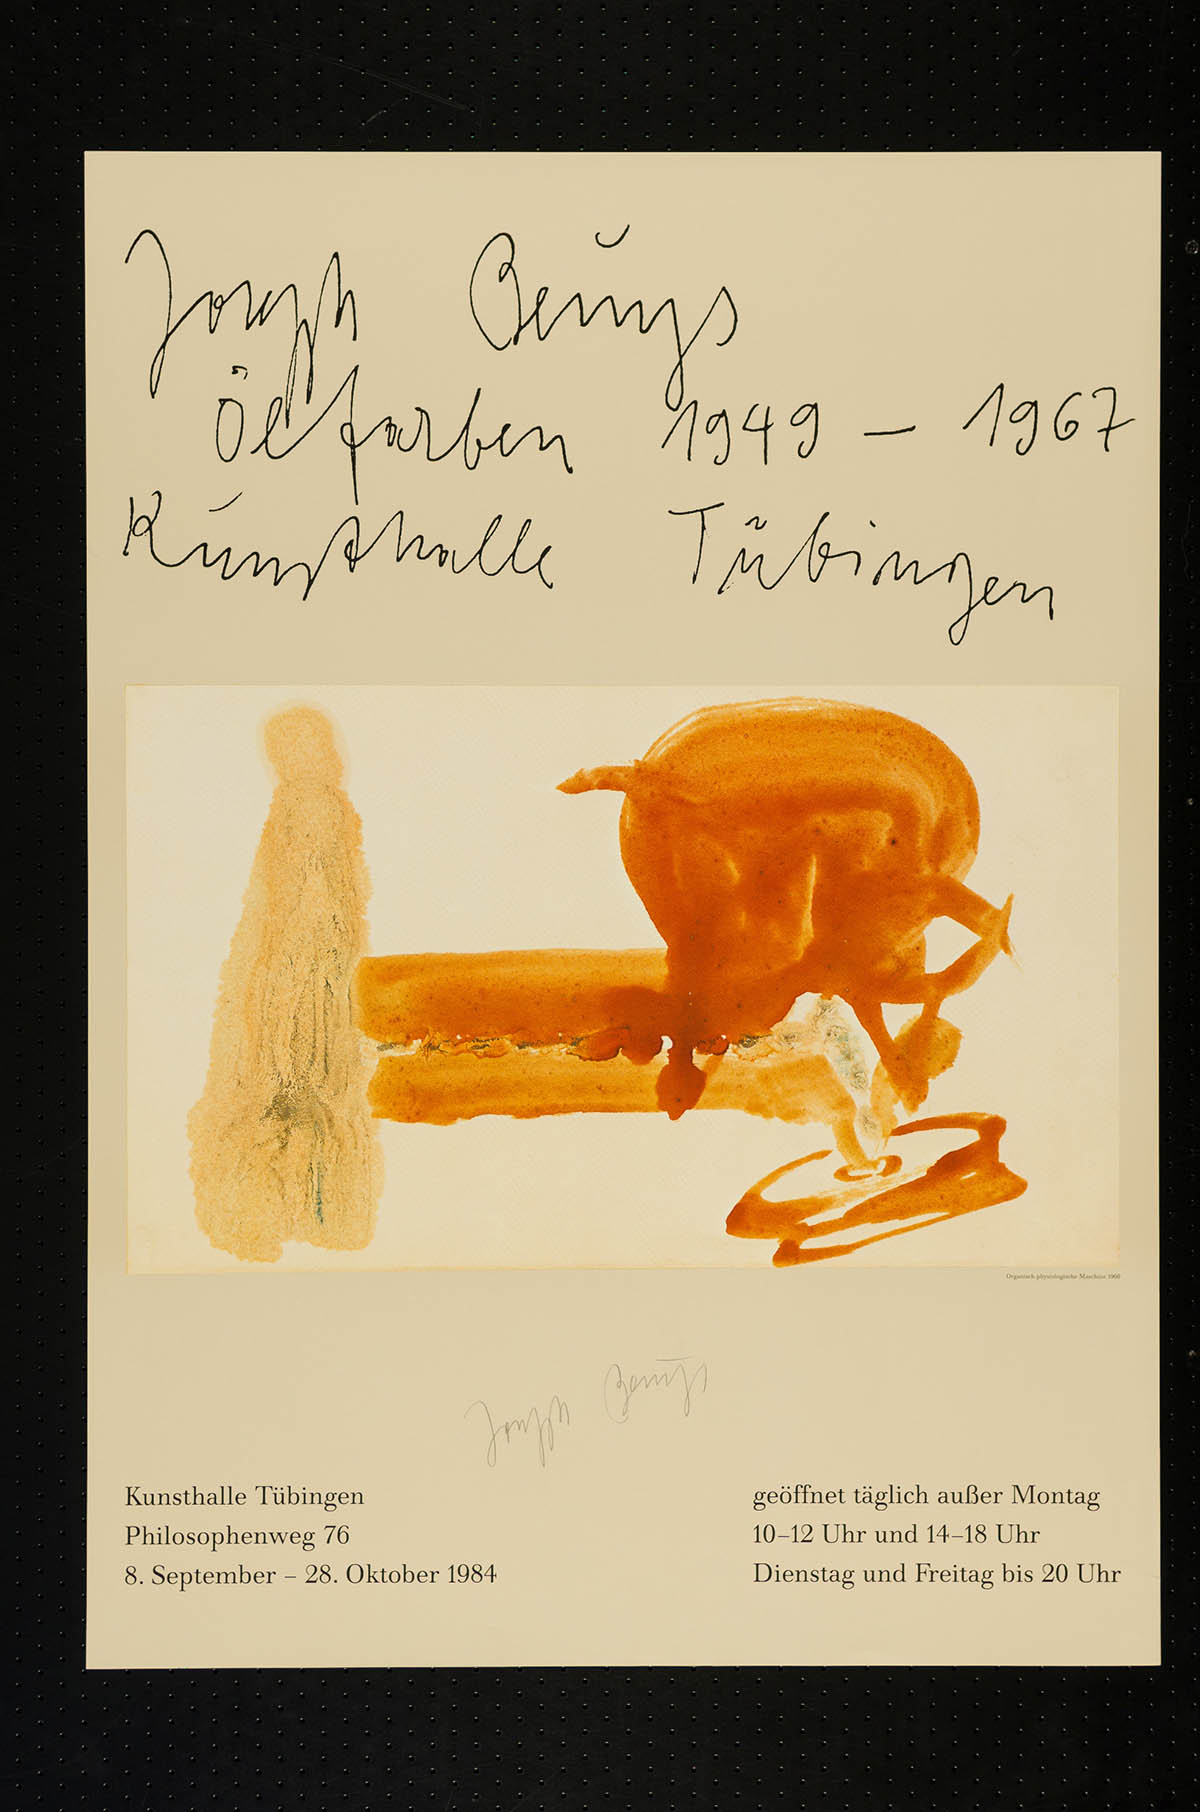 Joseph Beuys, Ölfarben, 1949-1967, Kunsthalle Tübingen, 1984